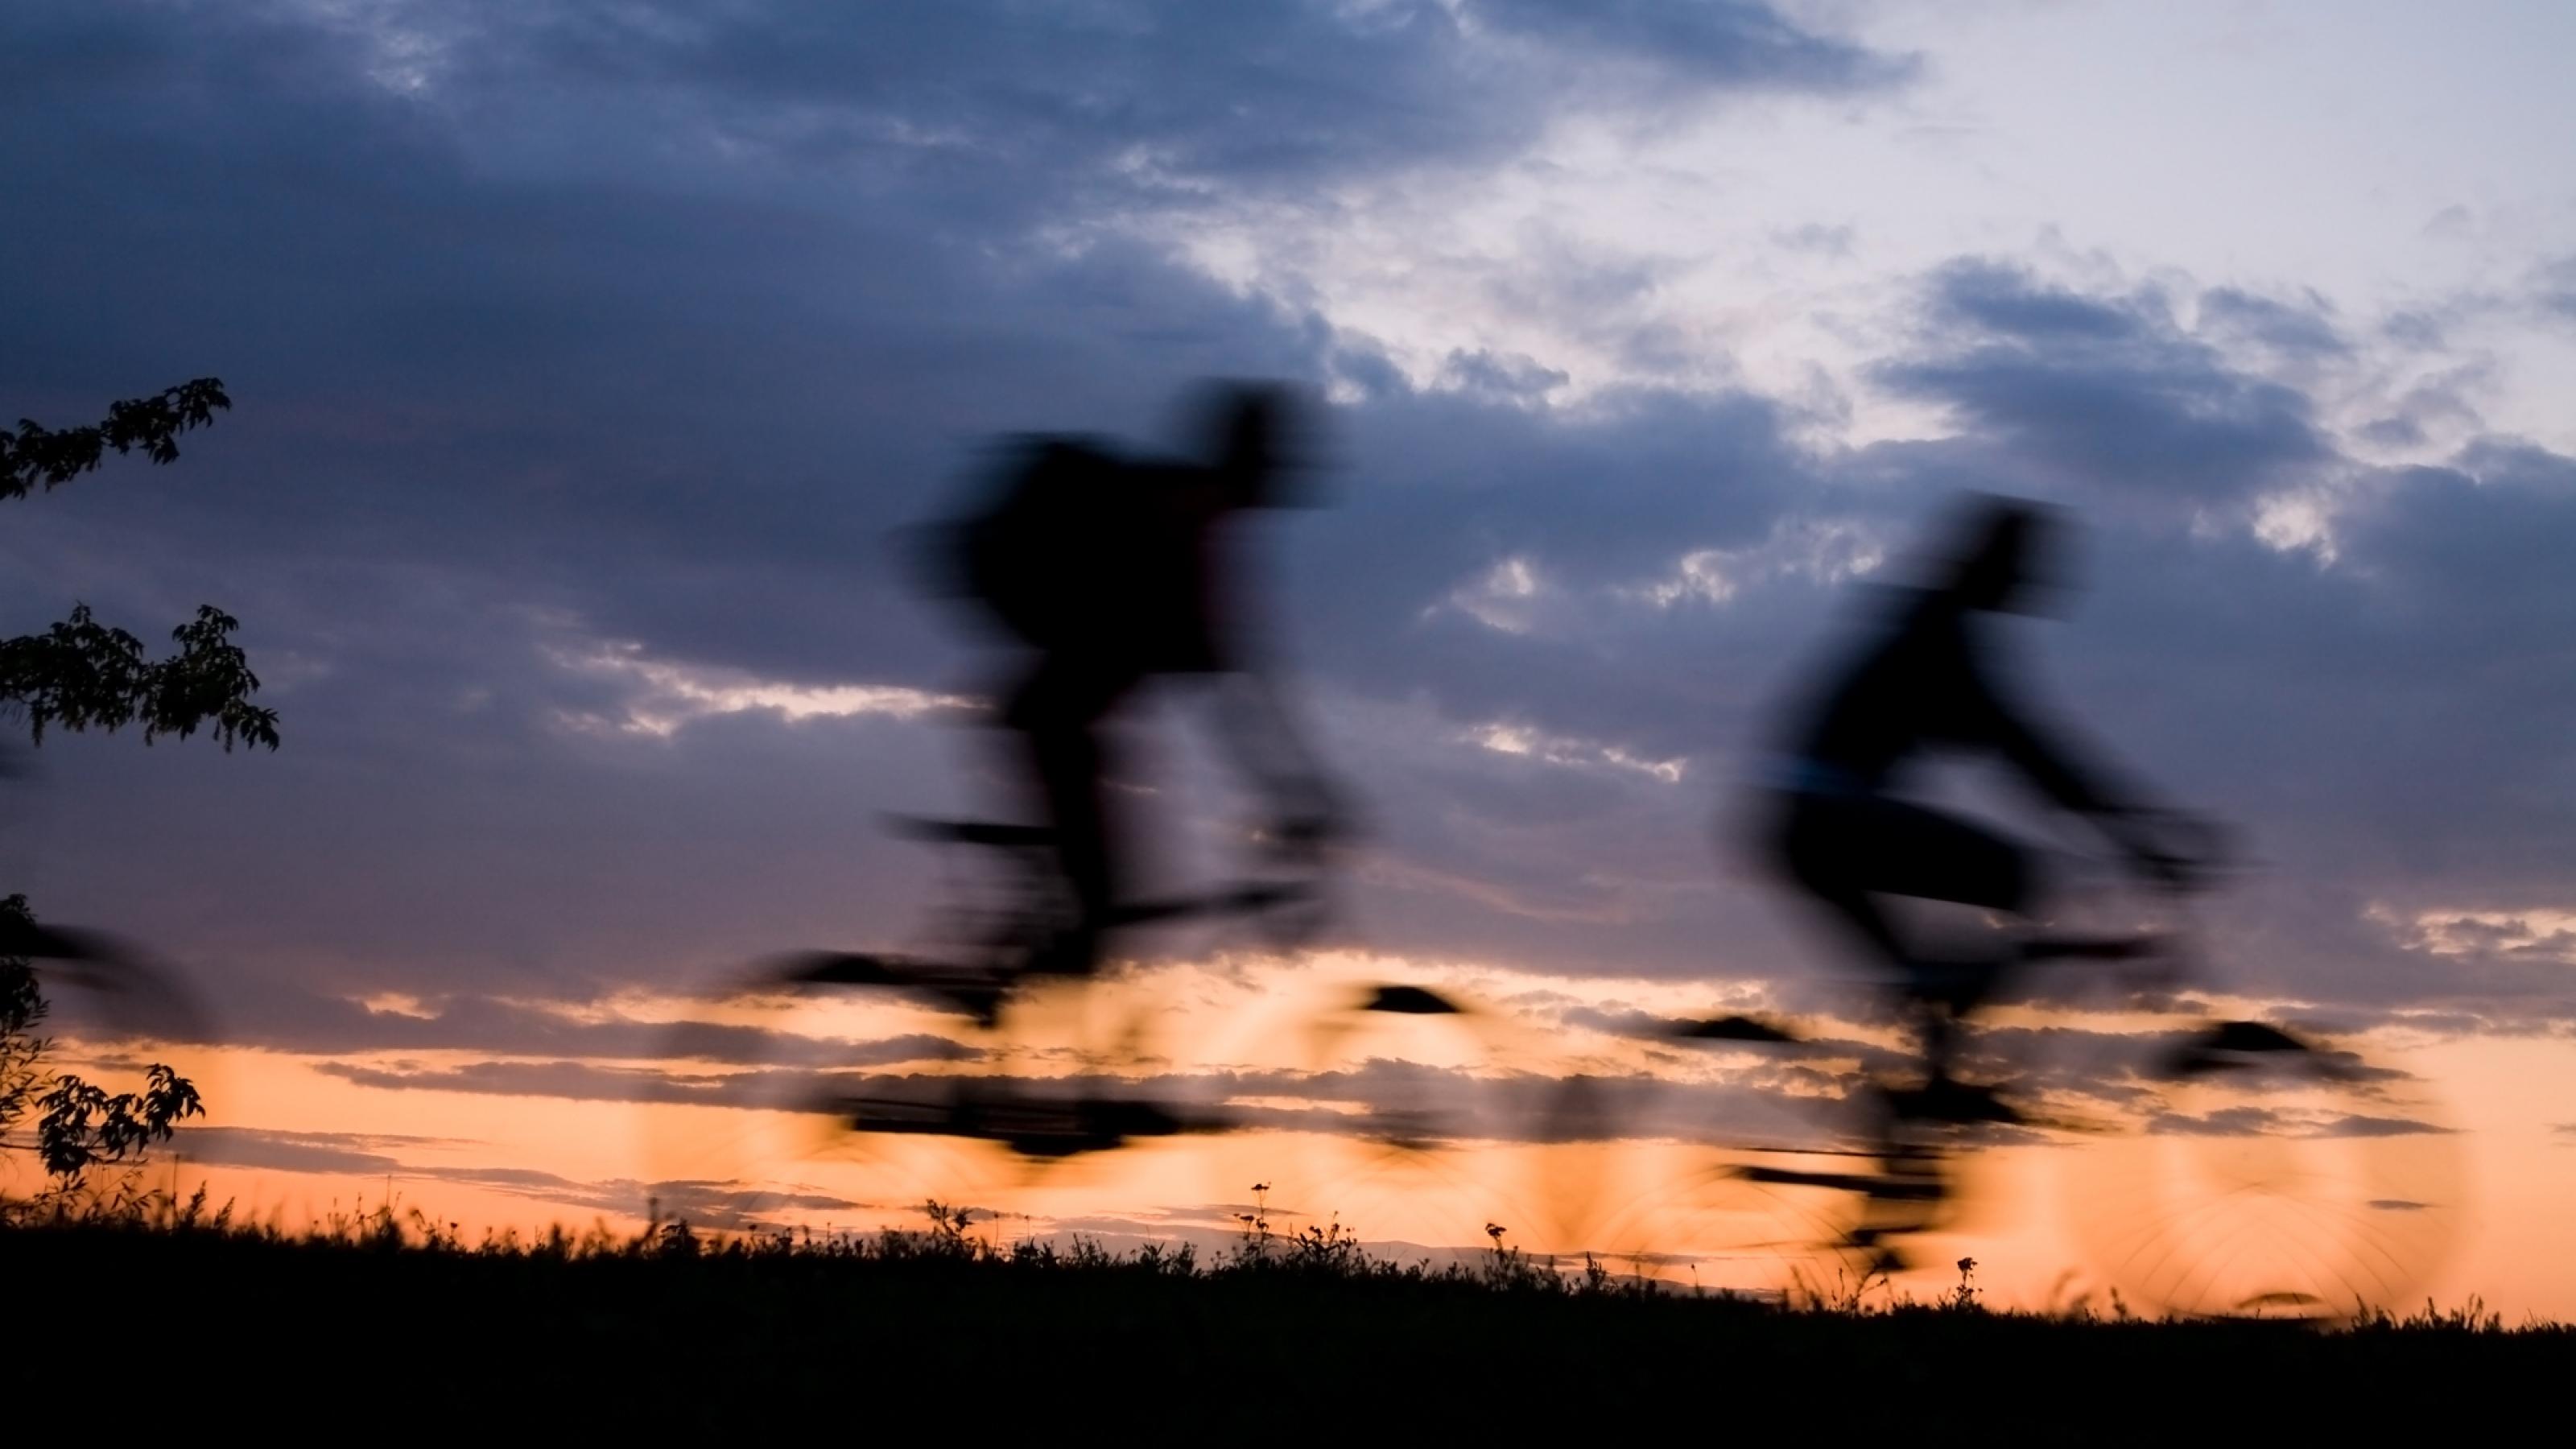 Das Bild zeigt die Umrisse von zwei Radfahrern im Abendlicht in freier Landschaft. Es vermittelt ein Gefühl der Freiheit, mit dem Fahrrad unterwegs zu sein.